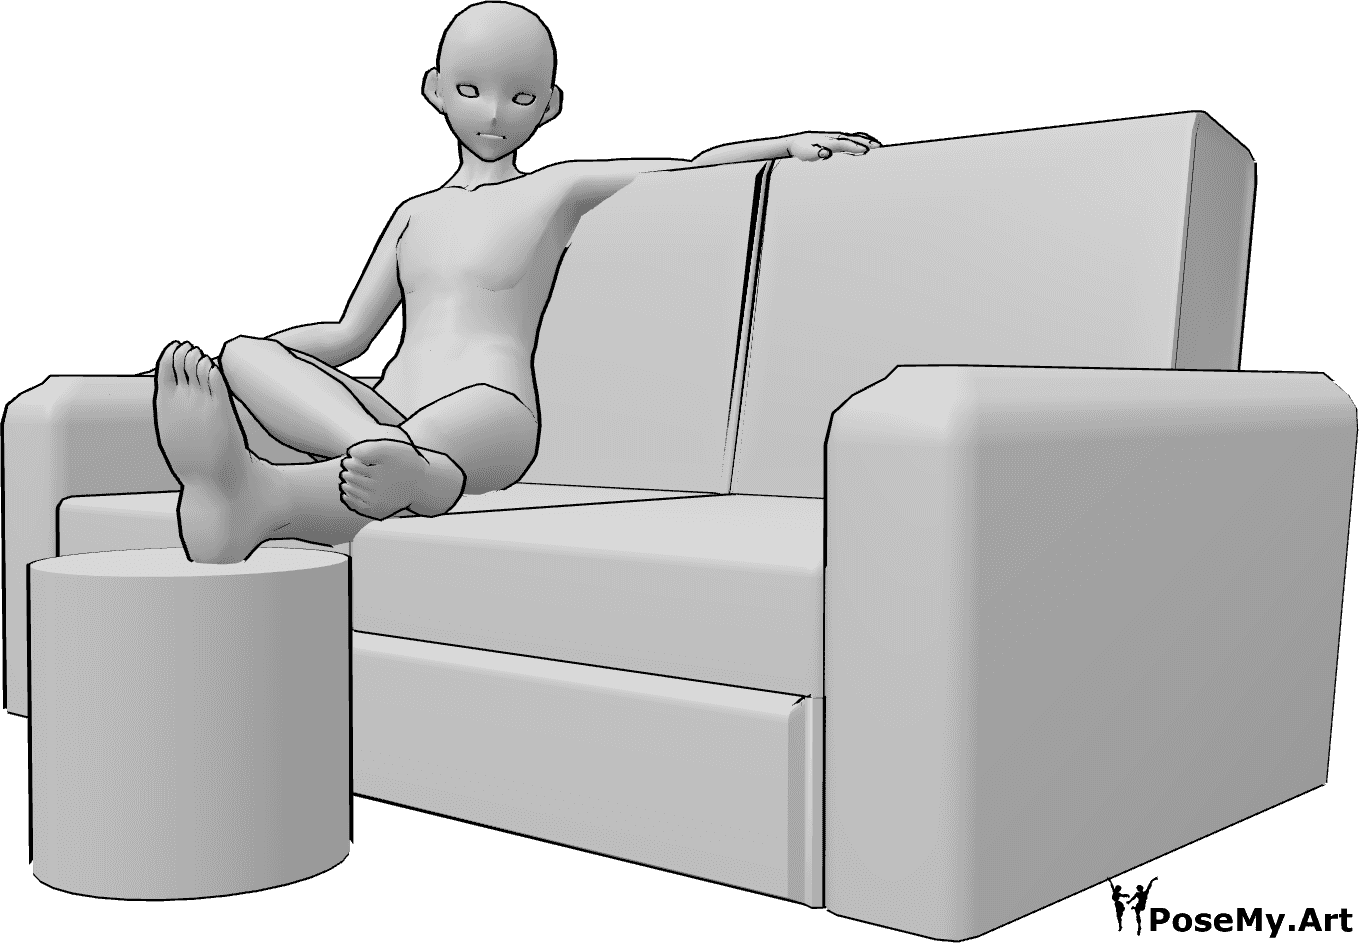 Posen-Referenz- Anime männliche Füße Pose - Anime männlich sitzt auf der Couch und ruht seine Beine, anime männliche Füße Pose